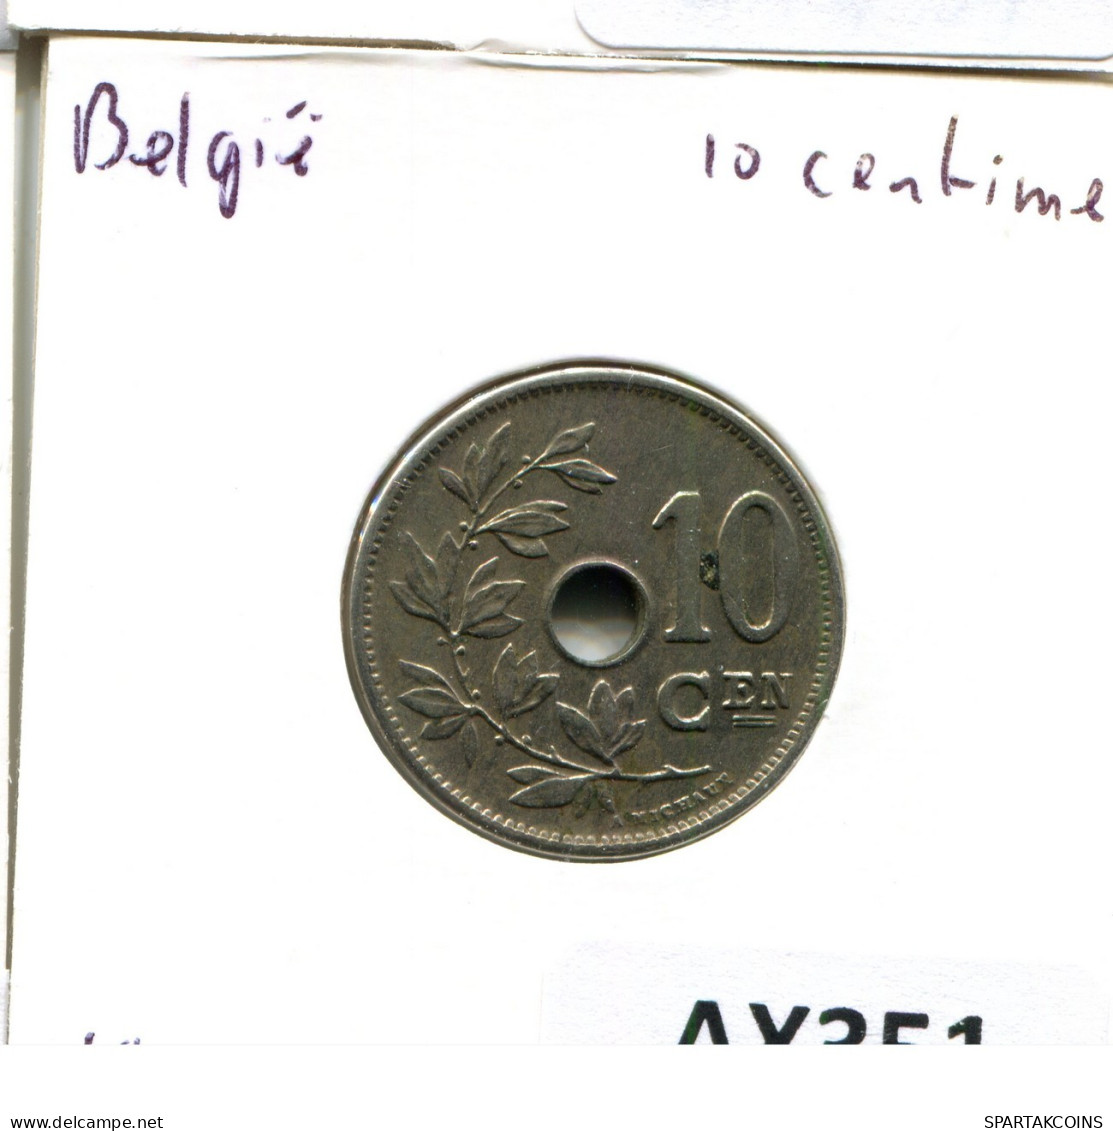 10 CENTIMES 1904 BELGIUM Coin DUTCH Text #AX351.U.A - 10 Cents